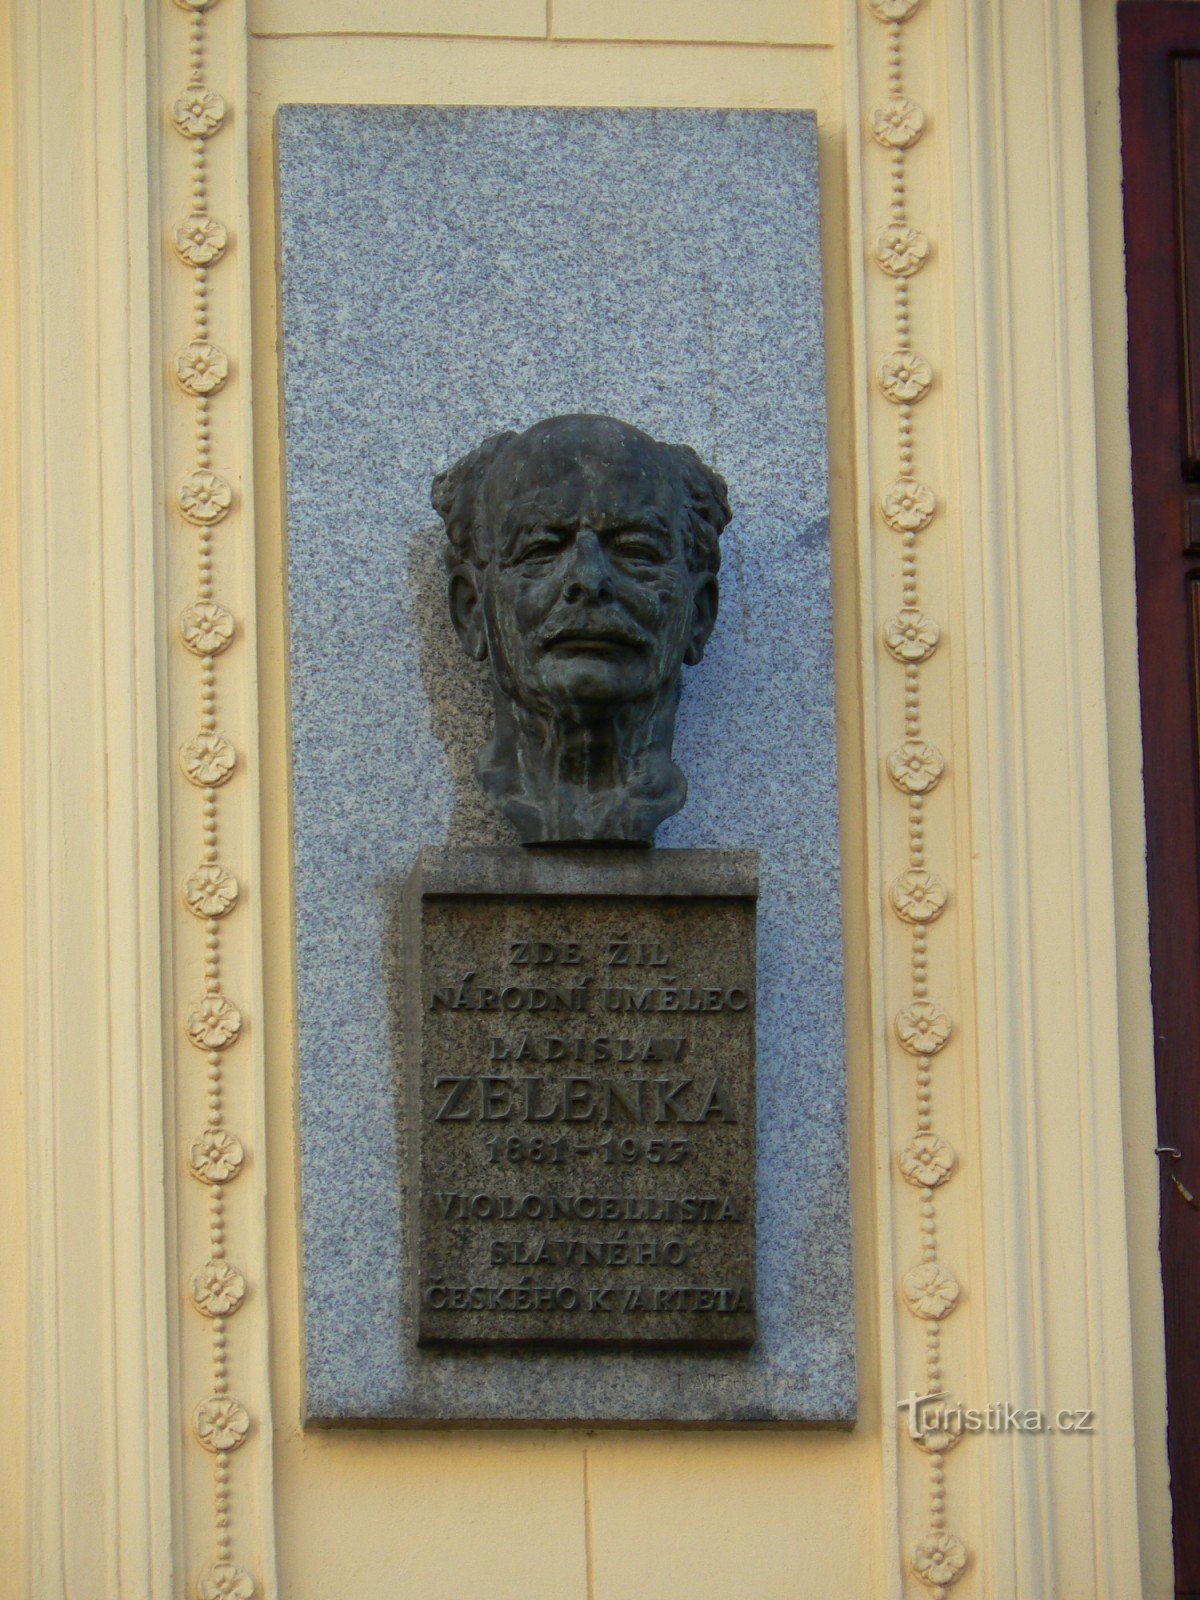 記念碑 ラディスラフ・ゼレンカ